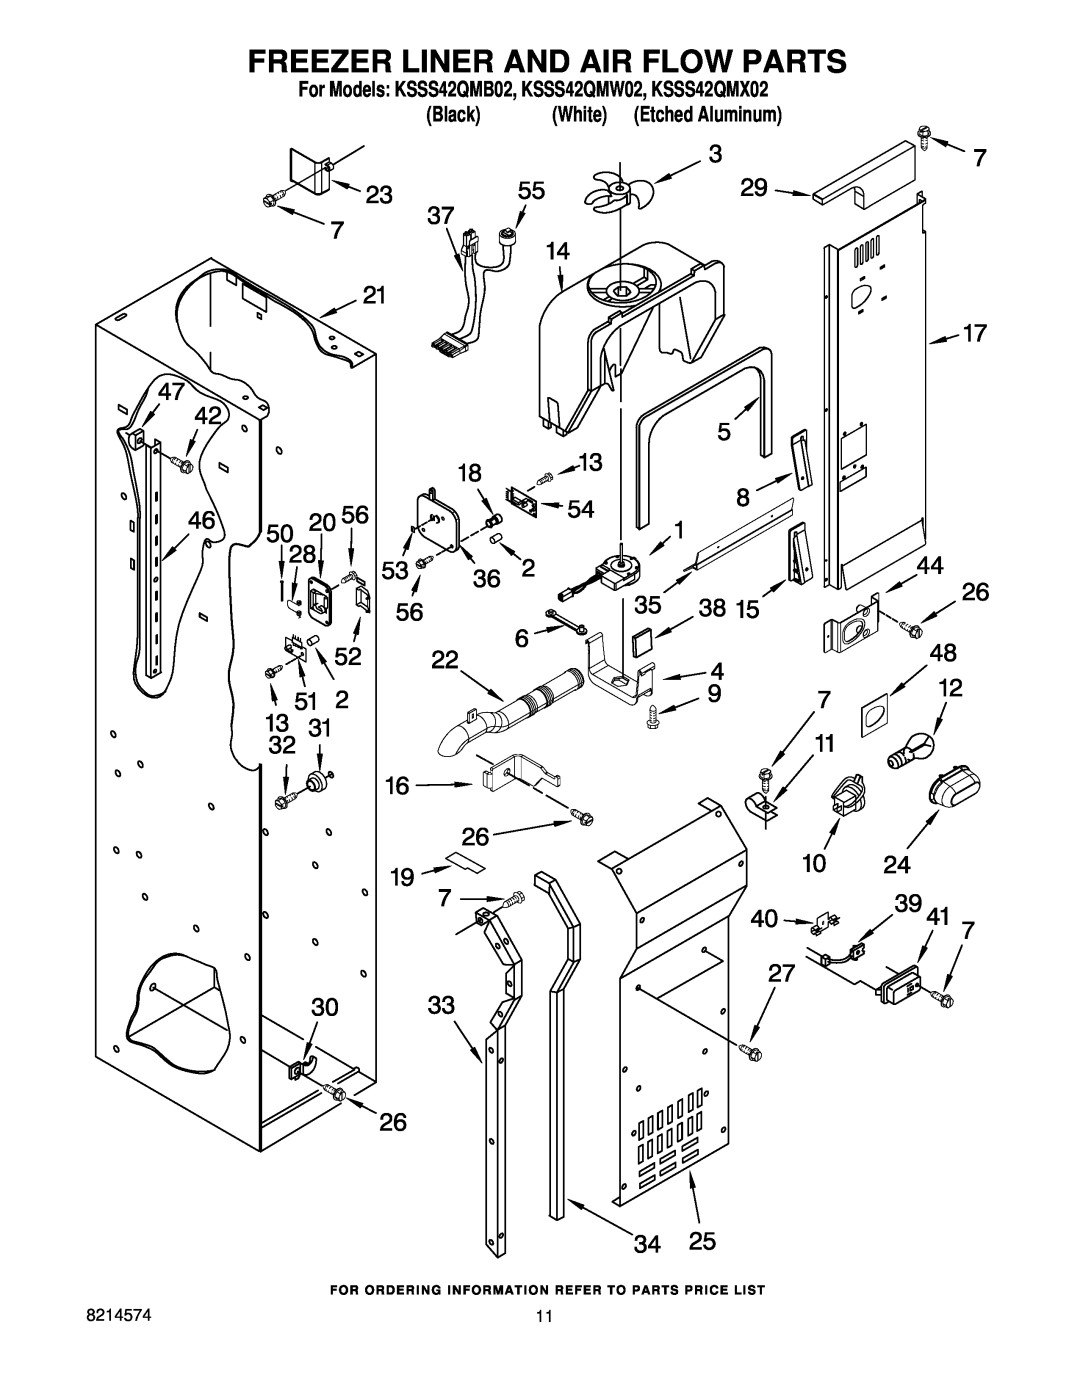 KitchenAid manual Freezer Liner And Air Flow Parts, For Models KSSS42QMB02, KSSS42QMW02, KSSS42QMX02, Black 